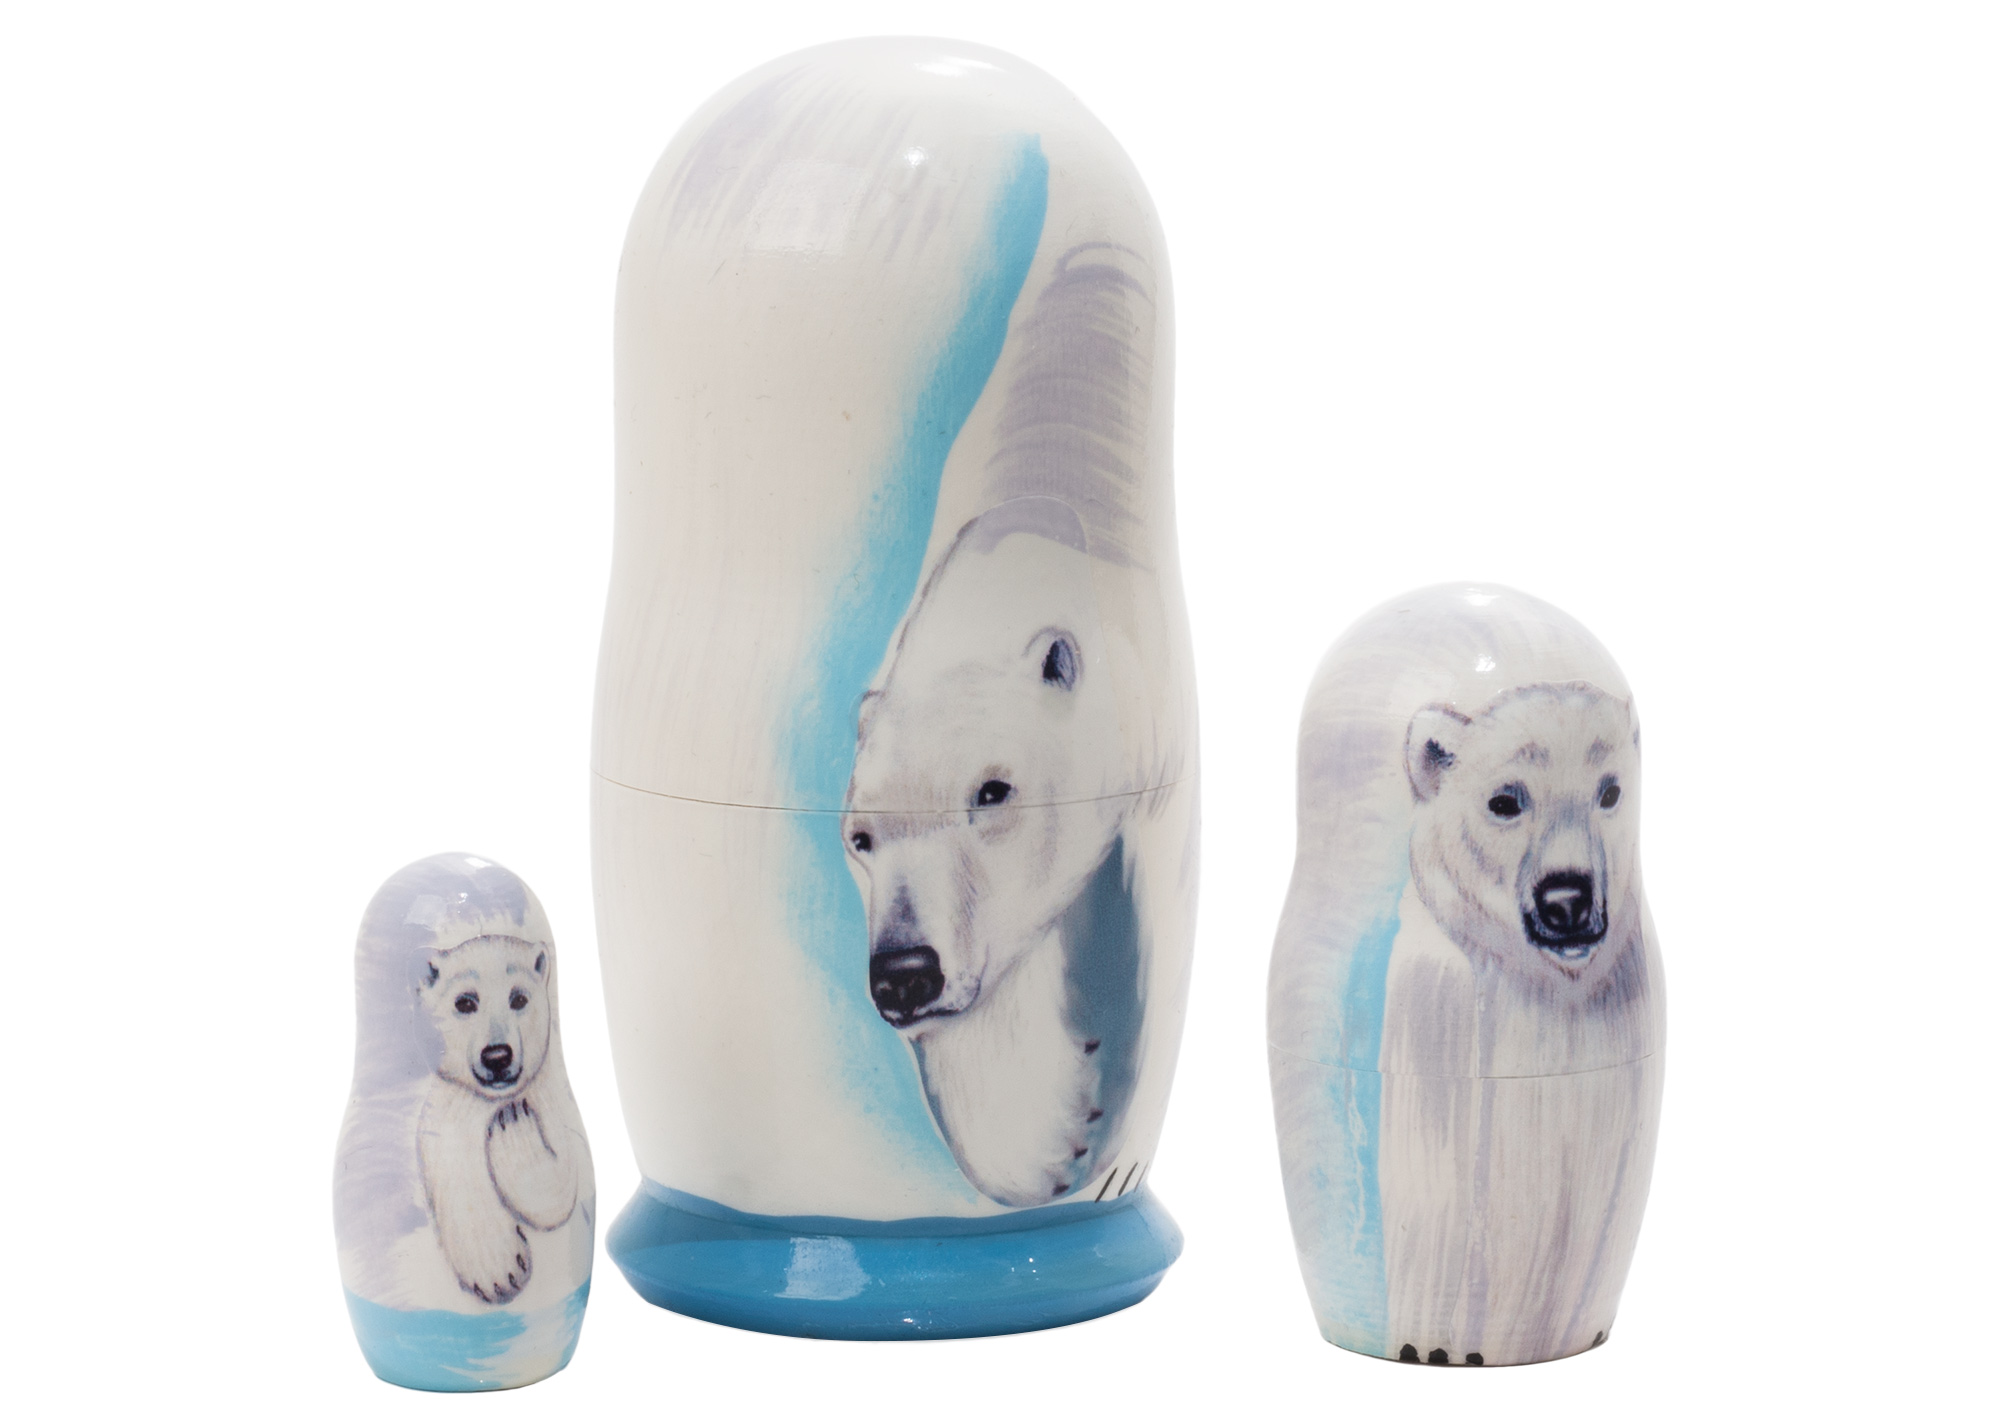 Buy Матрешка «Белый медведь» 3 места 9 см at GoldenCockerel.com